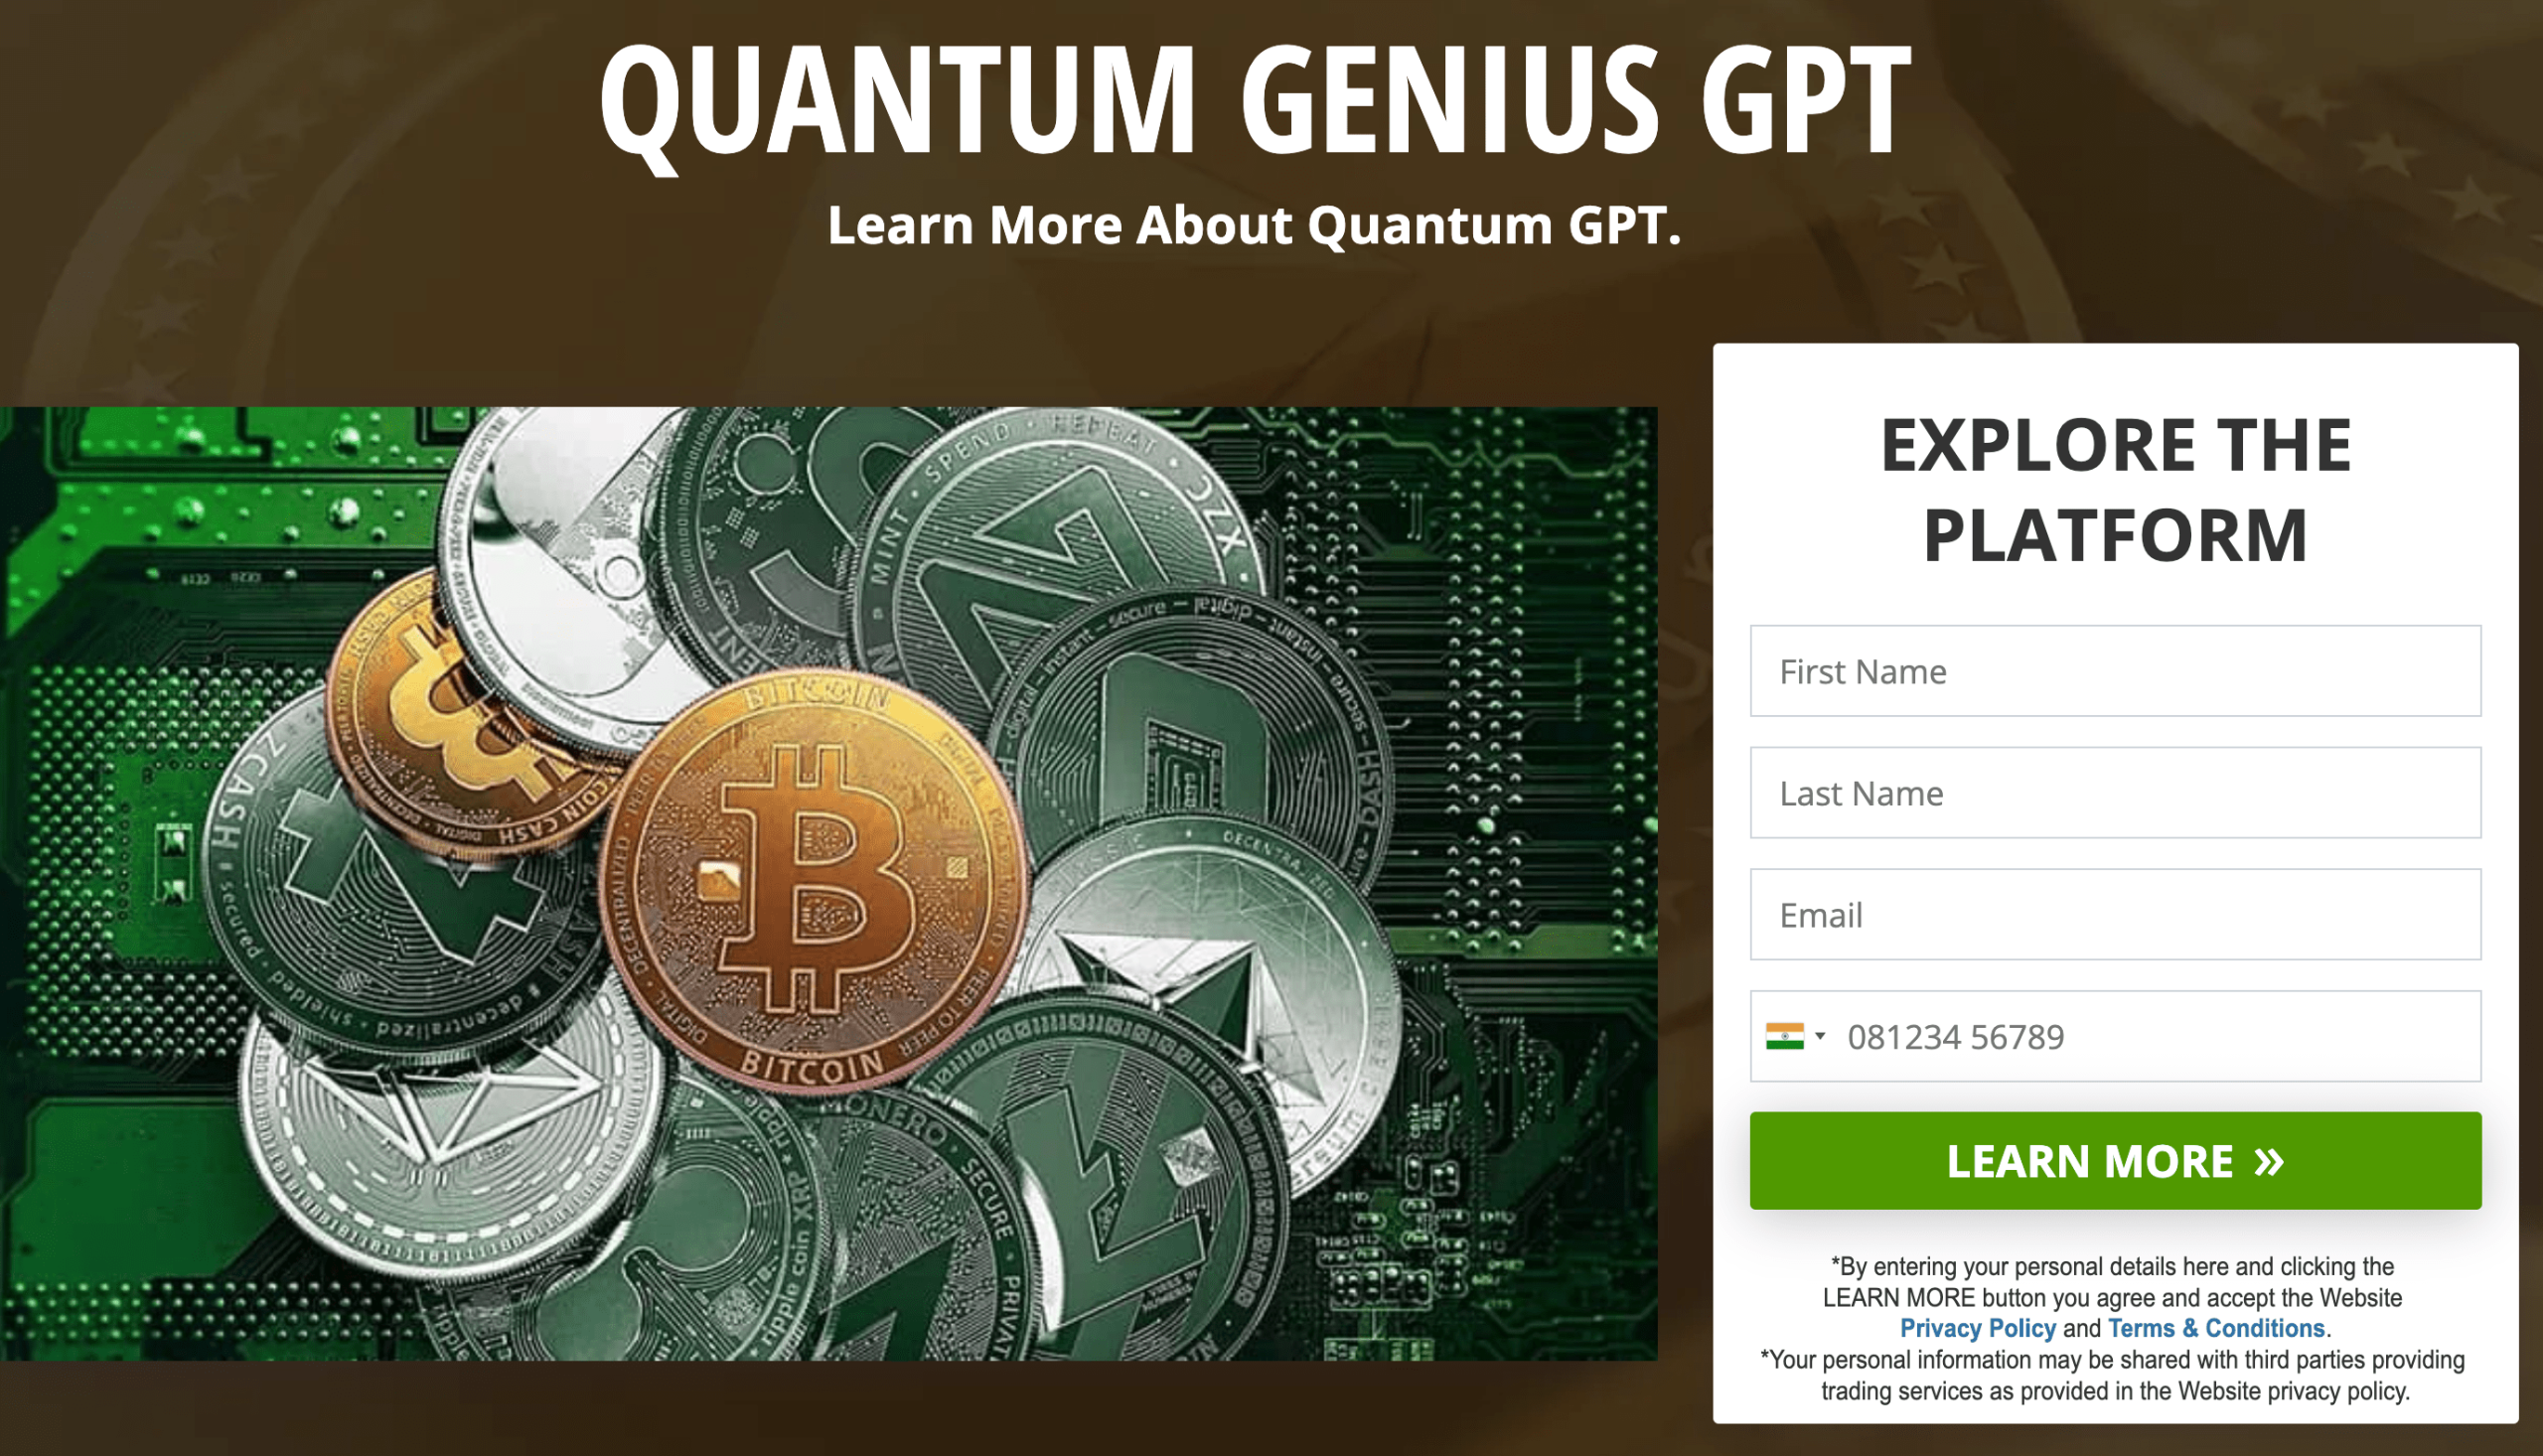 Quantum Genius GPT Review 2023 - Legit Trading Platform?